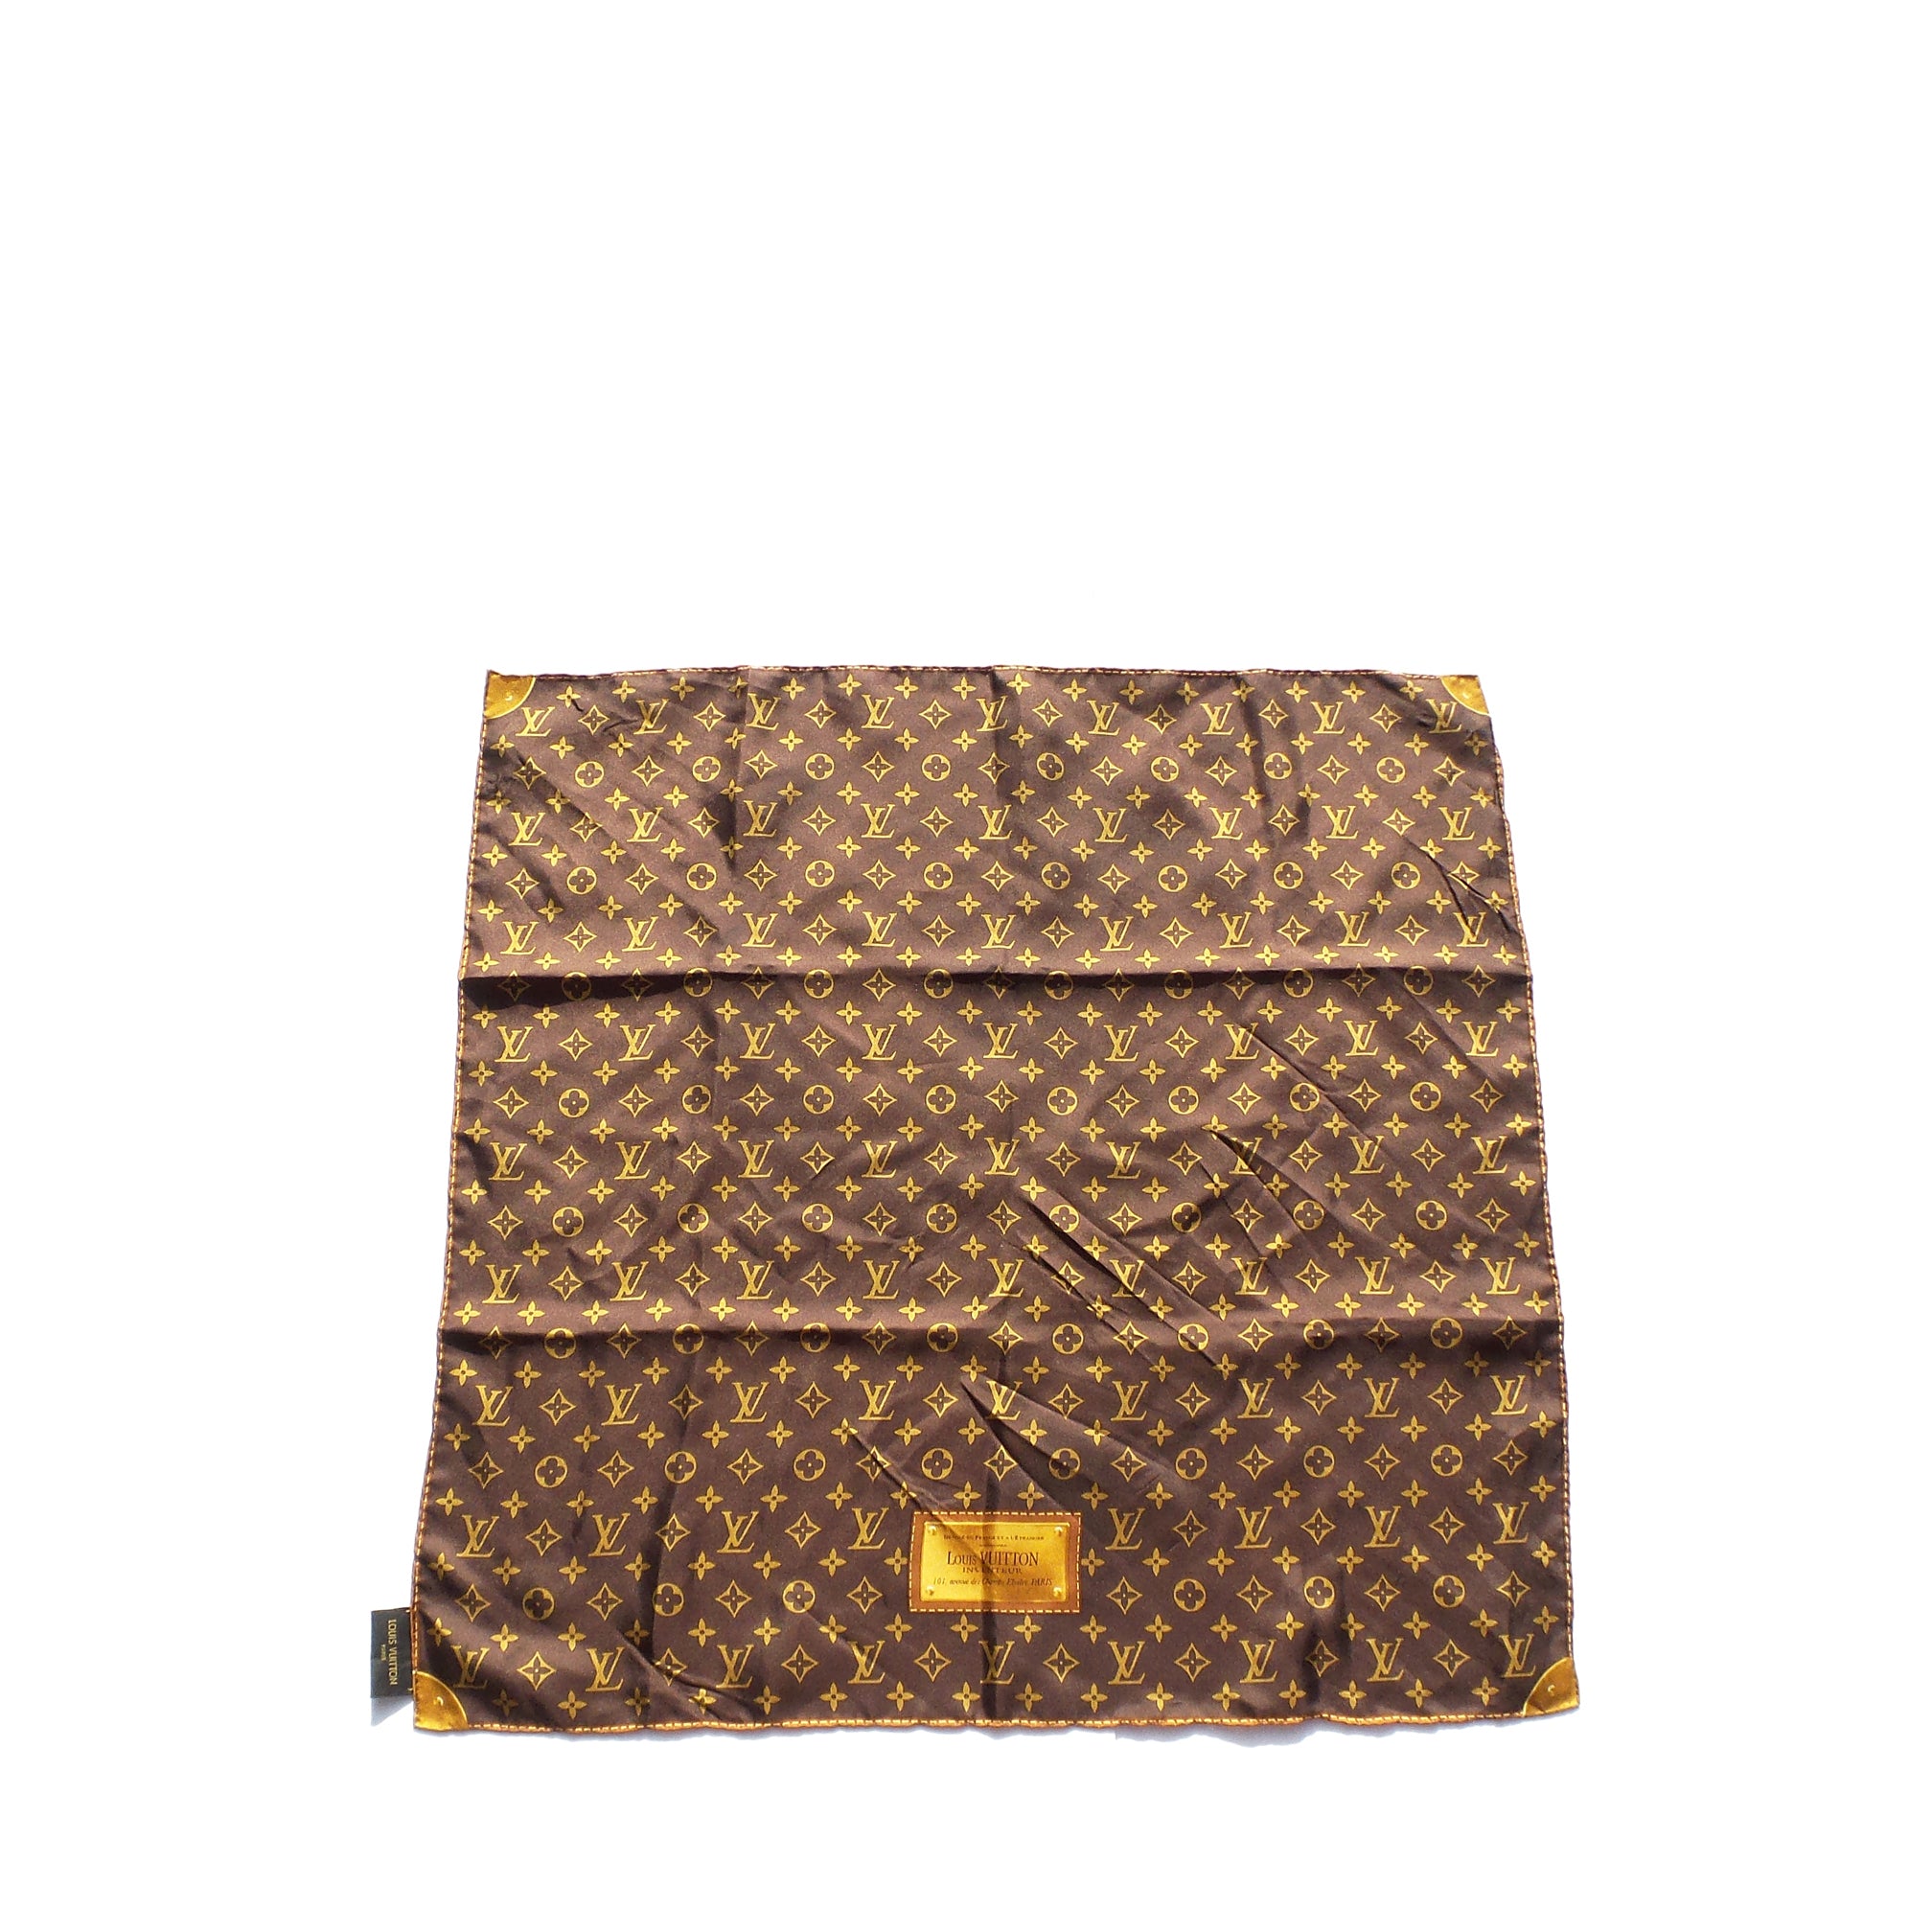 Monogram Confidential Bandeau  Luxury Silk Squares and Bandeaus   Accessories  Women M78656  LOUIS VUITTON